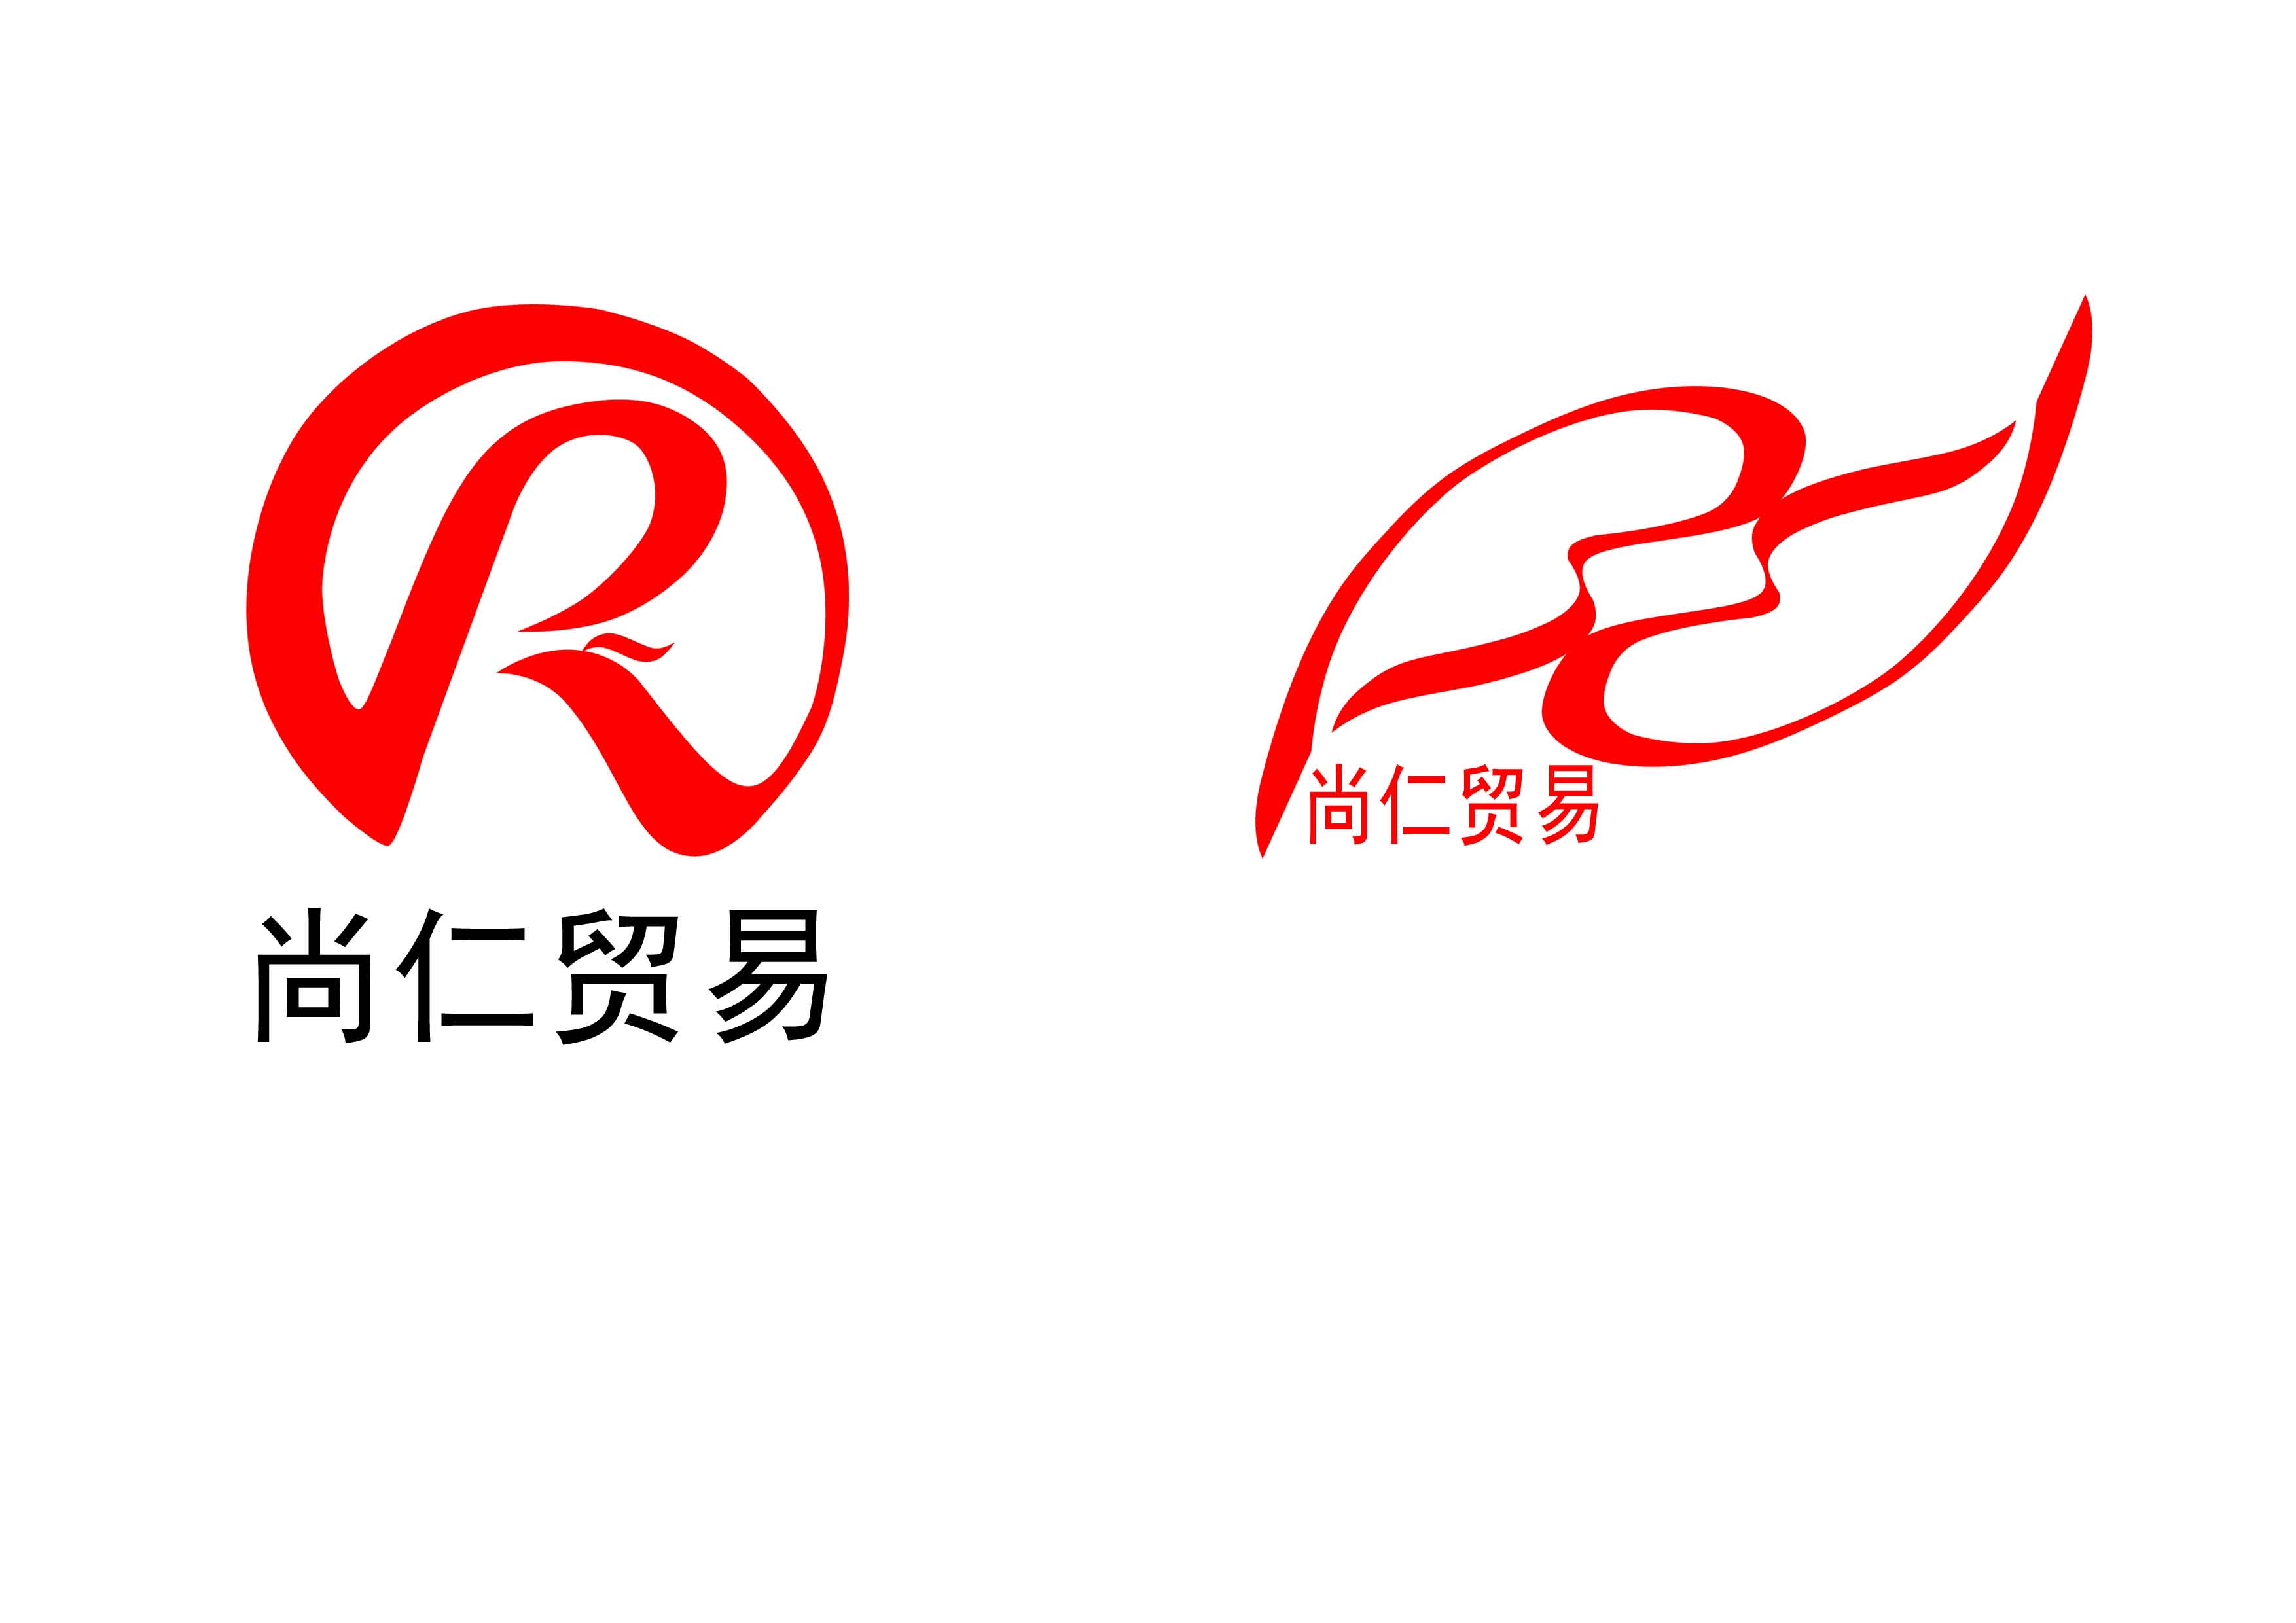 杭州尚仁贸易有限公司logo设计第30373765号稿件